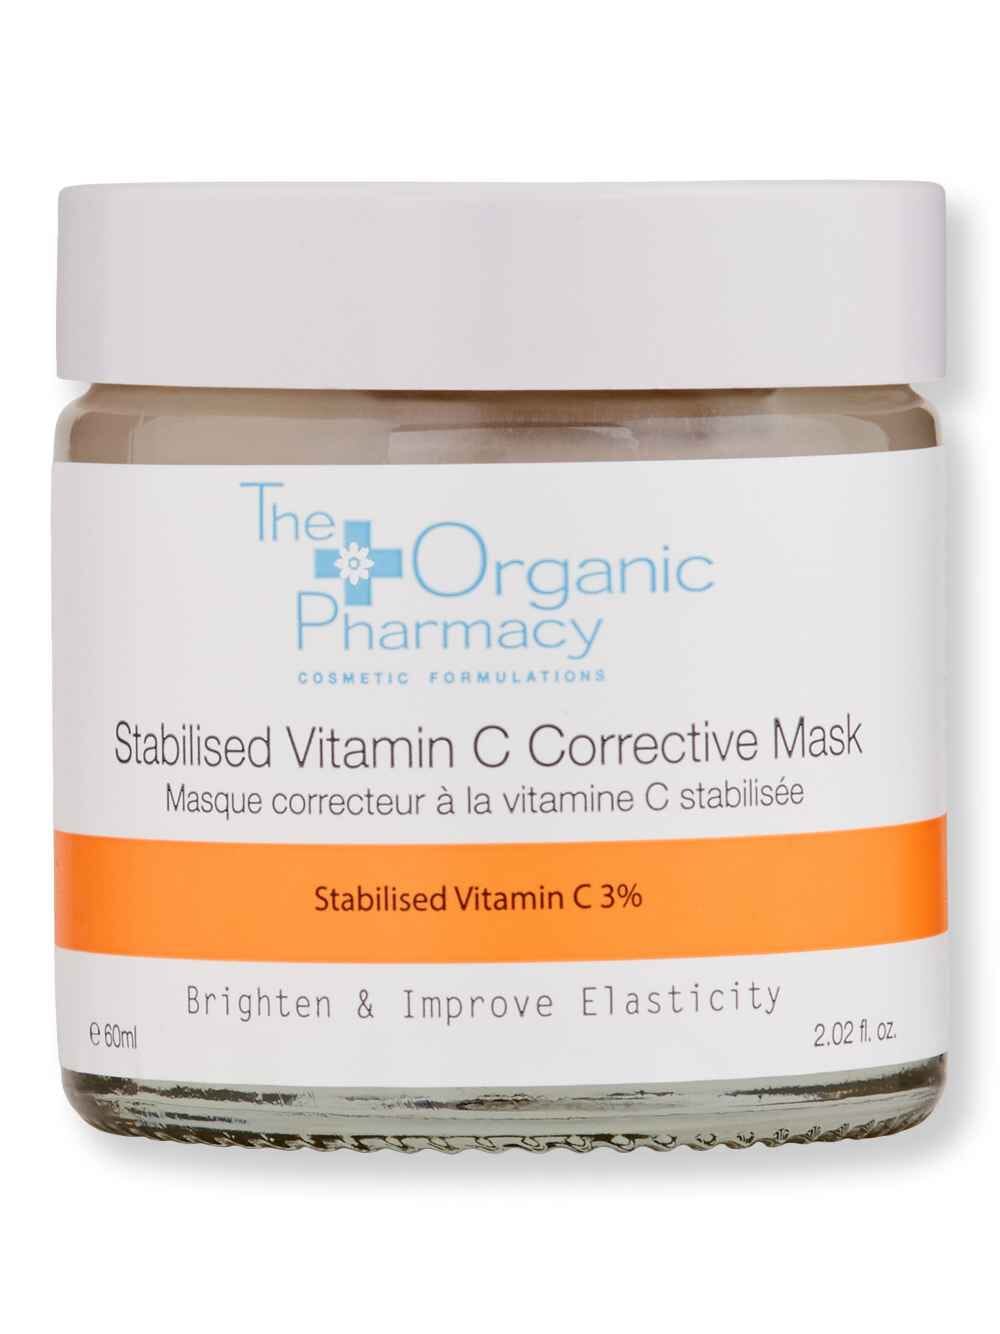 The Organic Pharmacy The Organic Pharmacy Stabilised Vitamin C Corrective Mask 60 ml Face Masks 